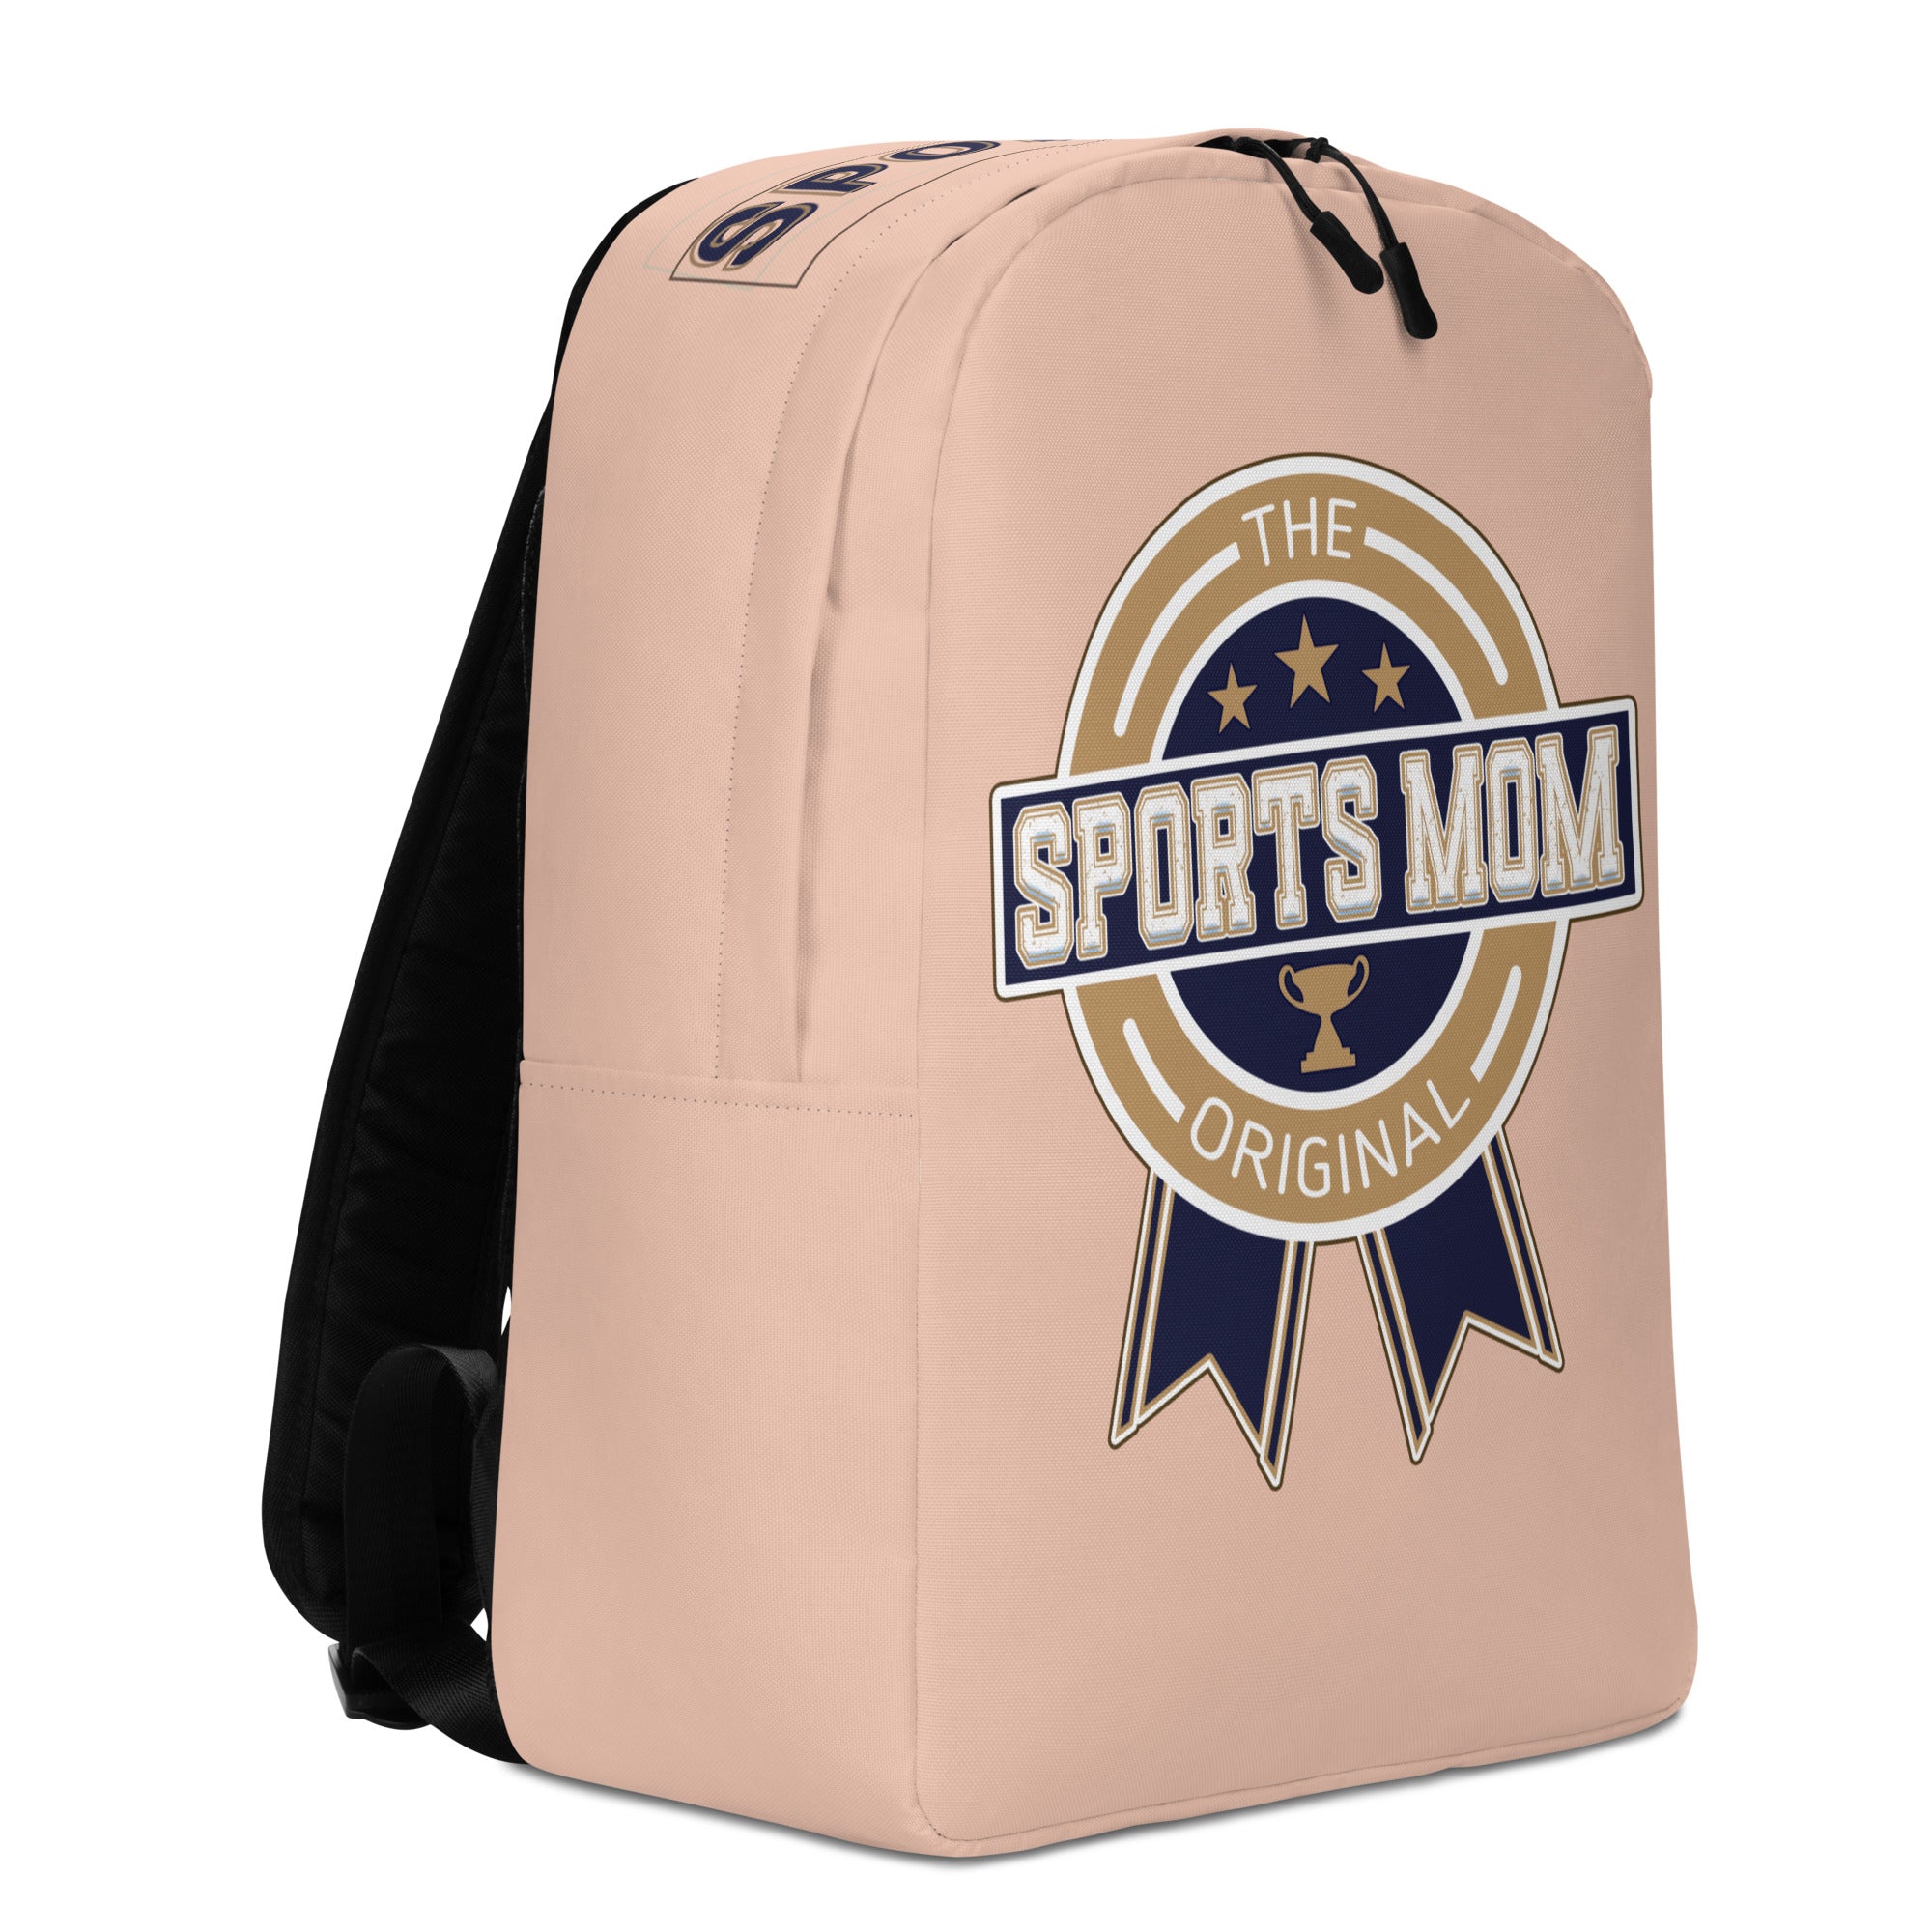 Sports Mom Minimalist Backpack - Away Game - Zinnwaldite